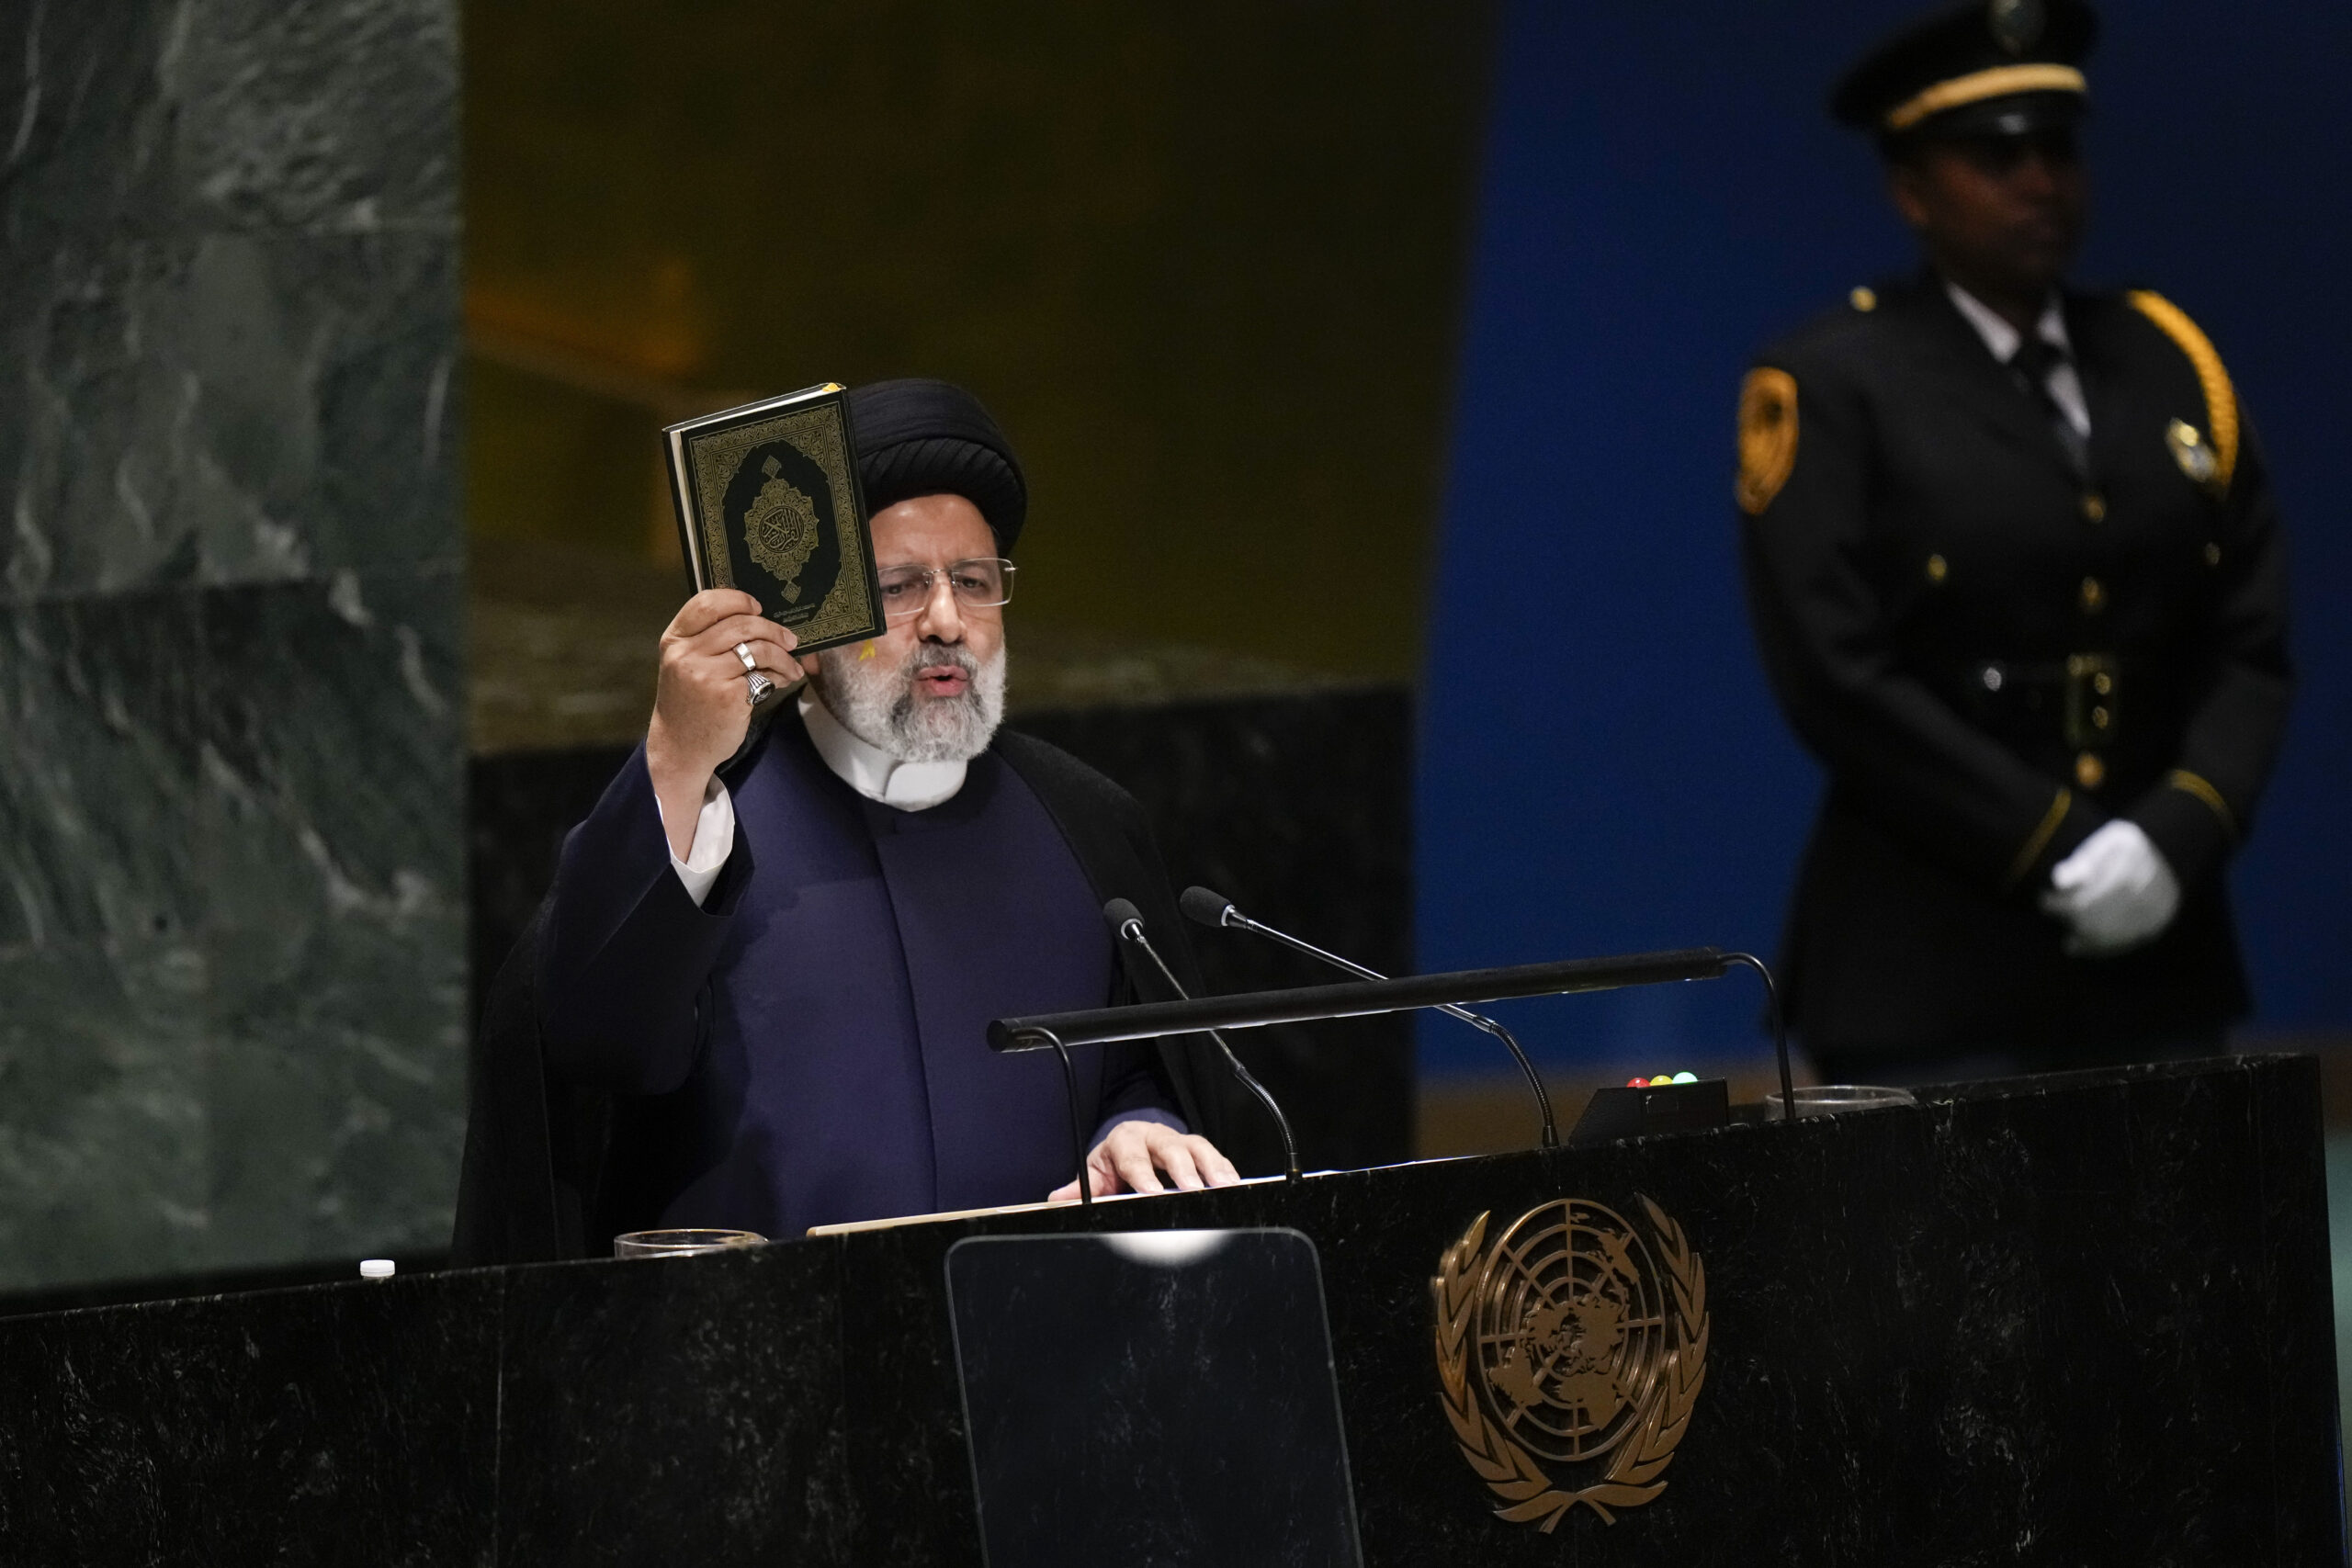 ΓΣ ΟΗΕ: Ο Ιρανός πρόεδρος κατηγόρησε τις ΗΠΑ ότι «υποκίνησαν την ένταση» της σύγκρουσης στην Ουκρανία